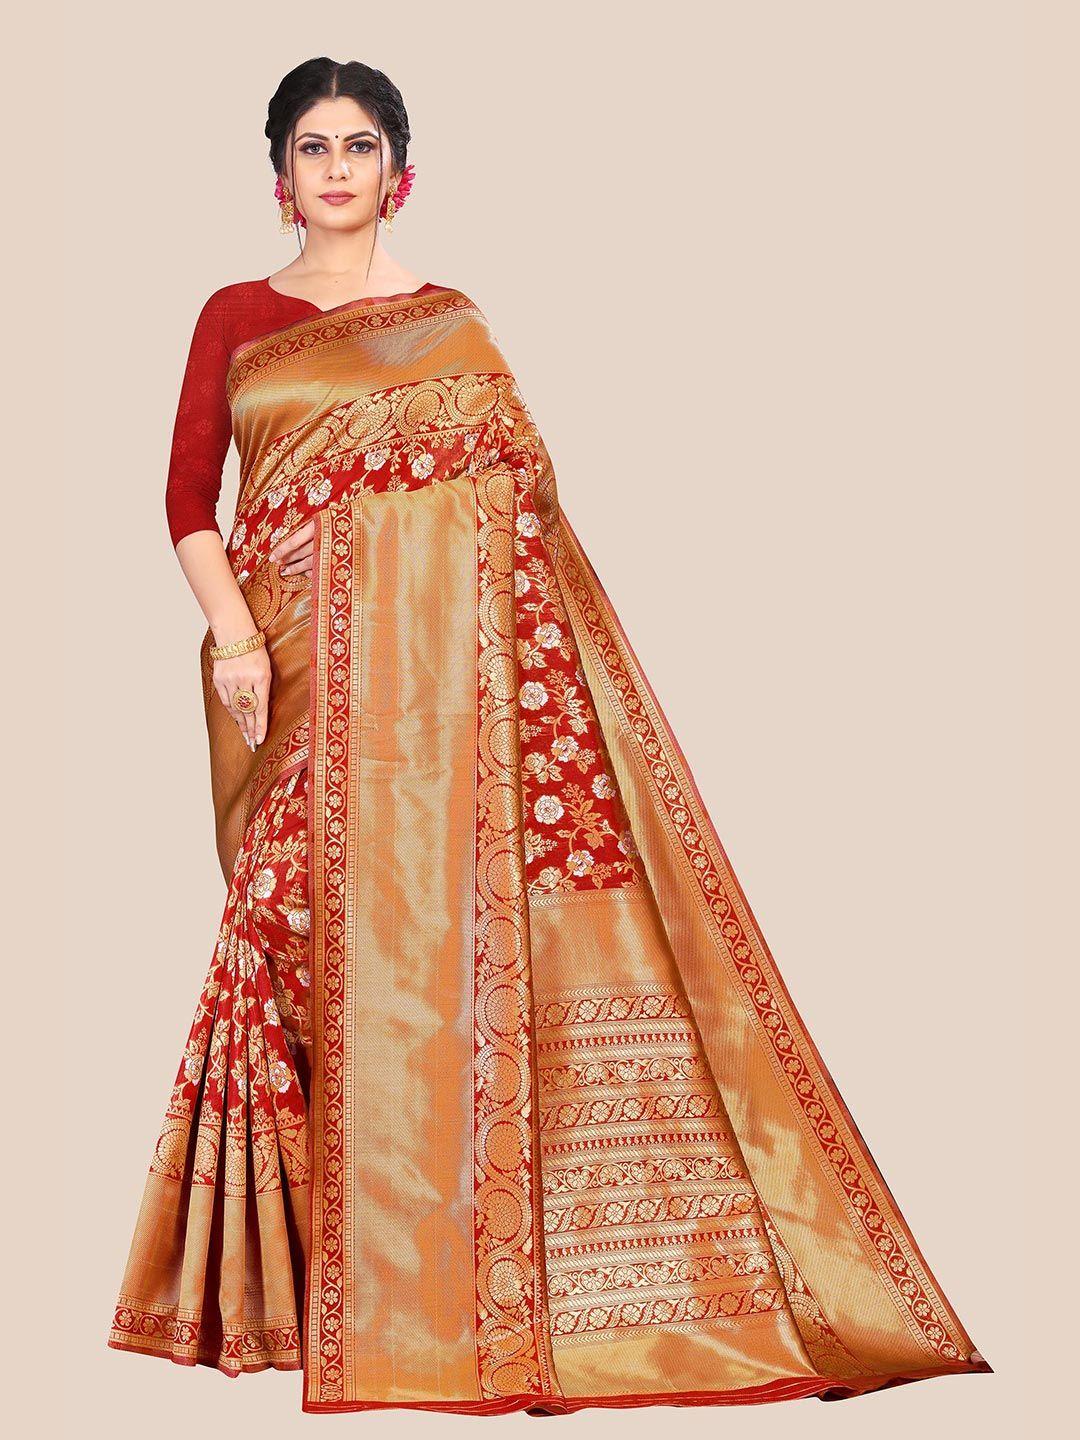 anjaneya sarees women red & gold-toned woven design banarasi silk blend saree